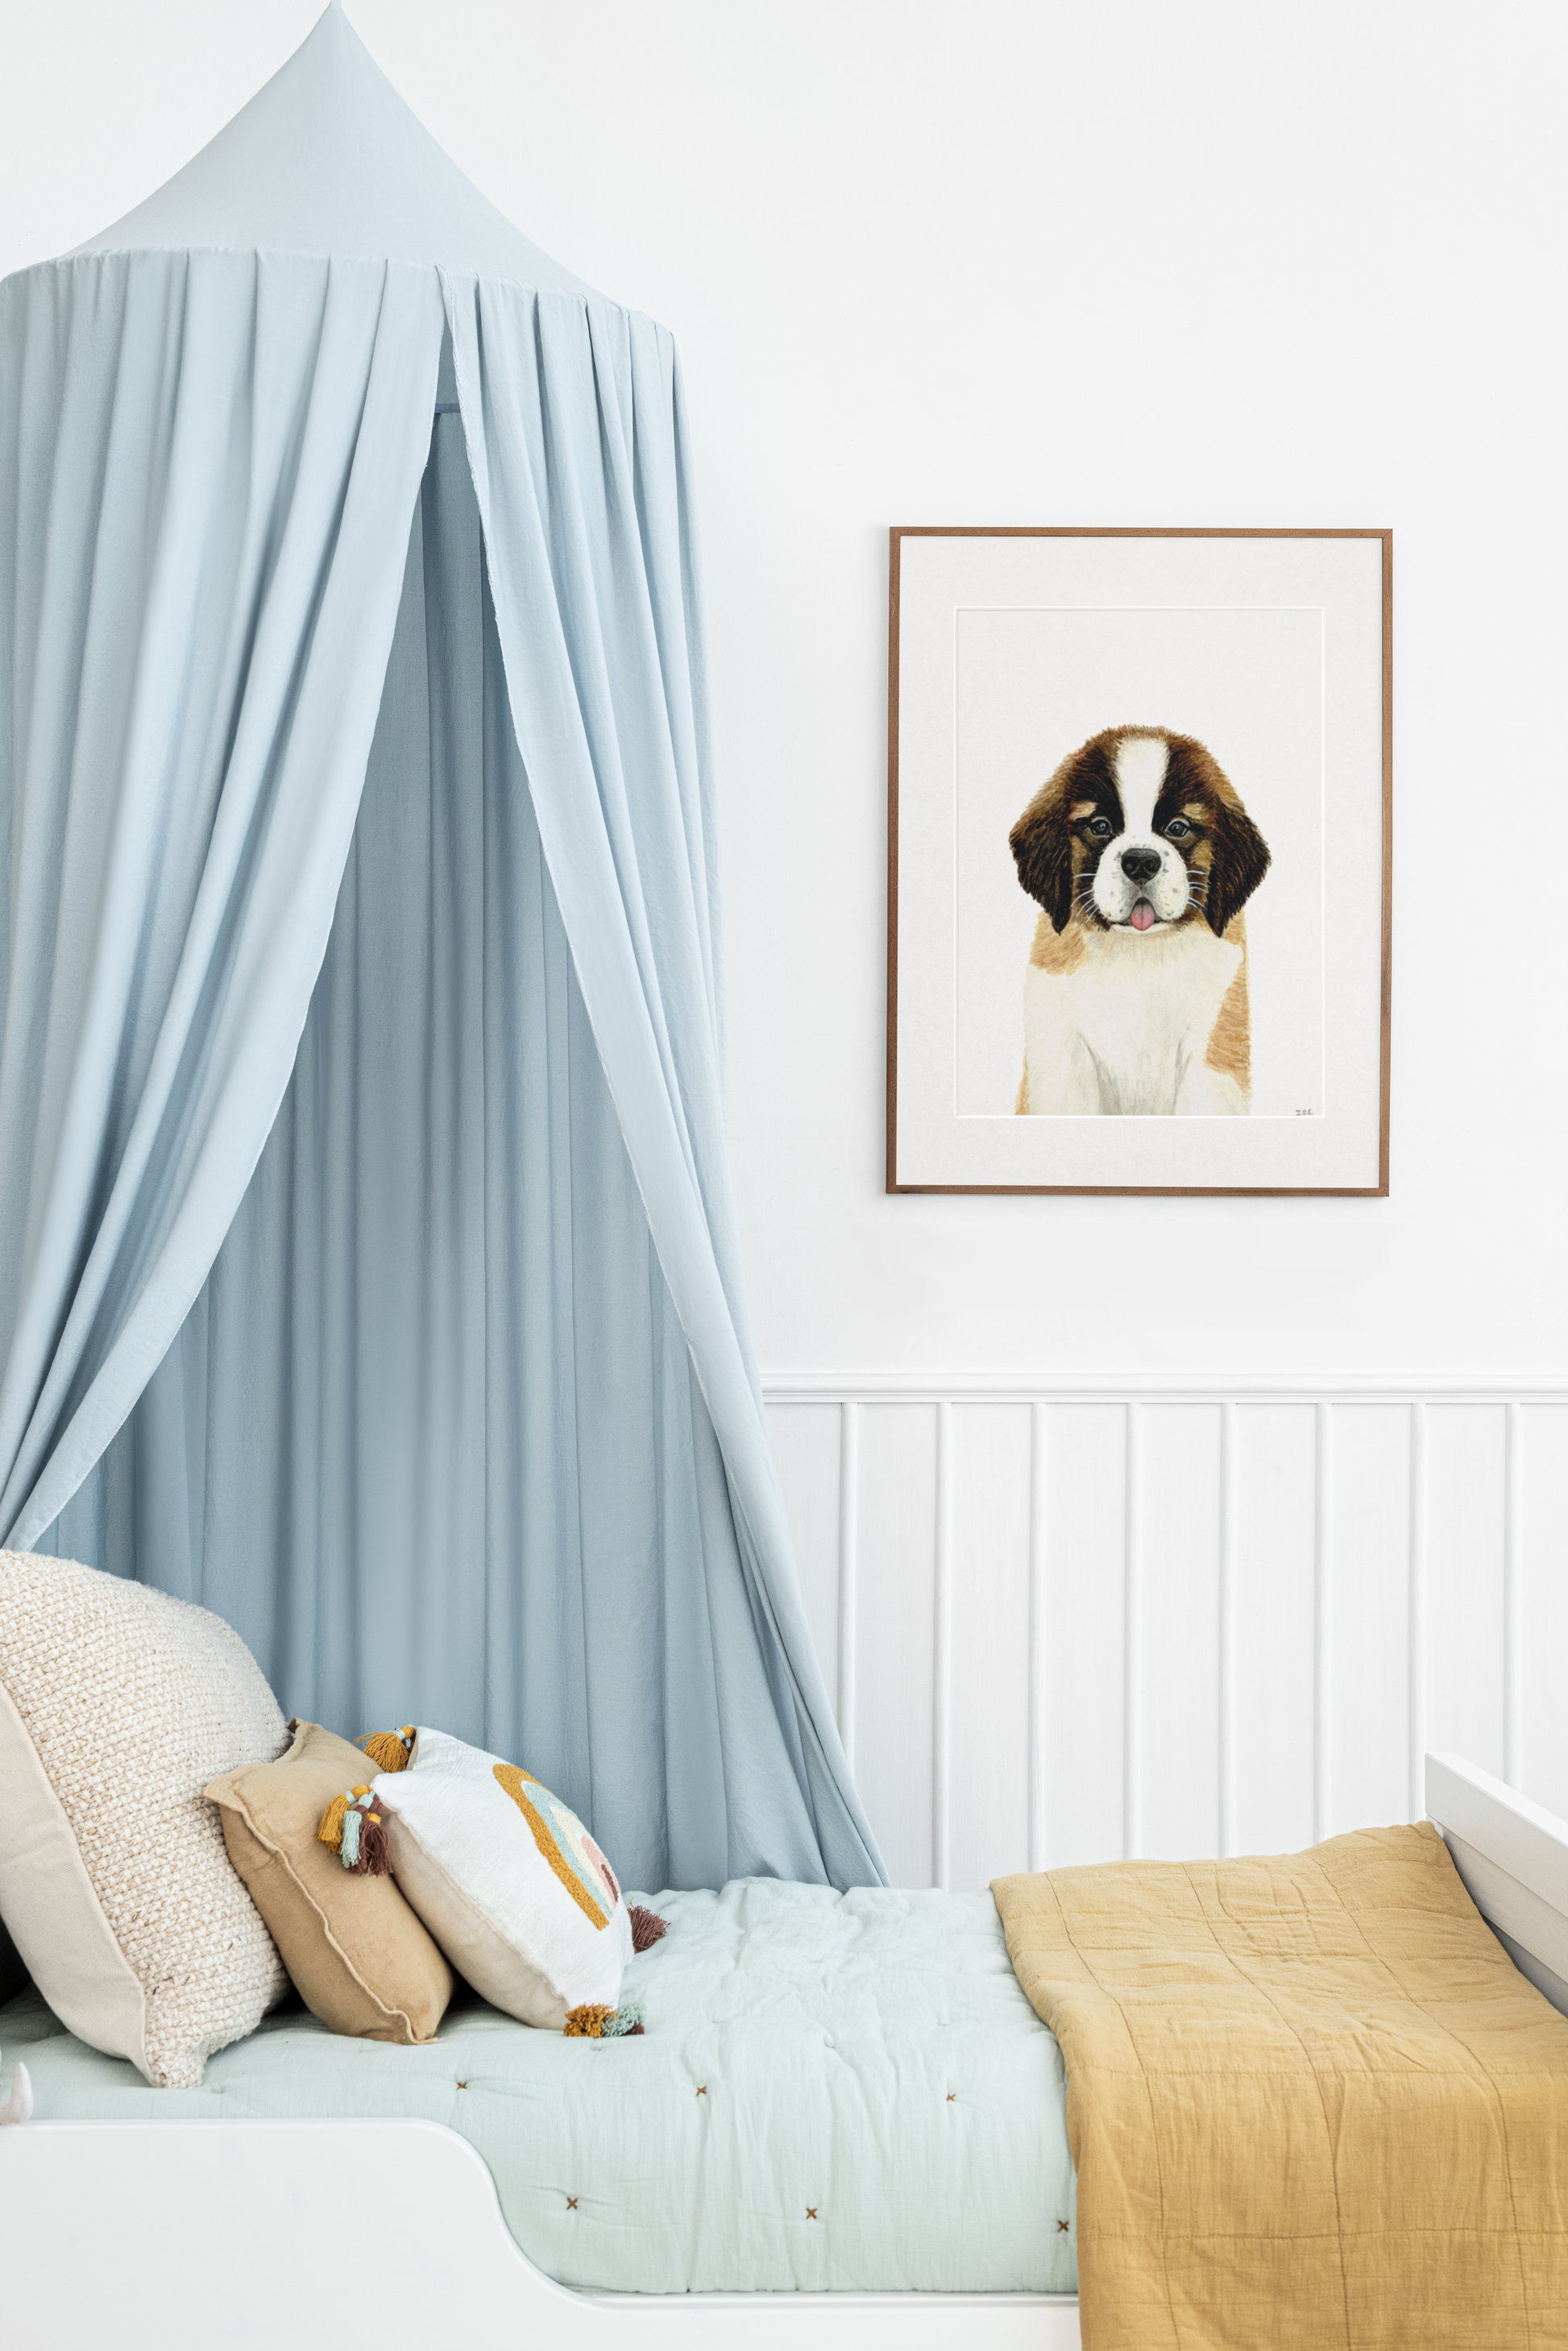 Saint Bernard dog framed and hung above childs bed